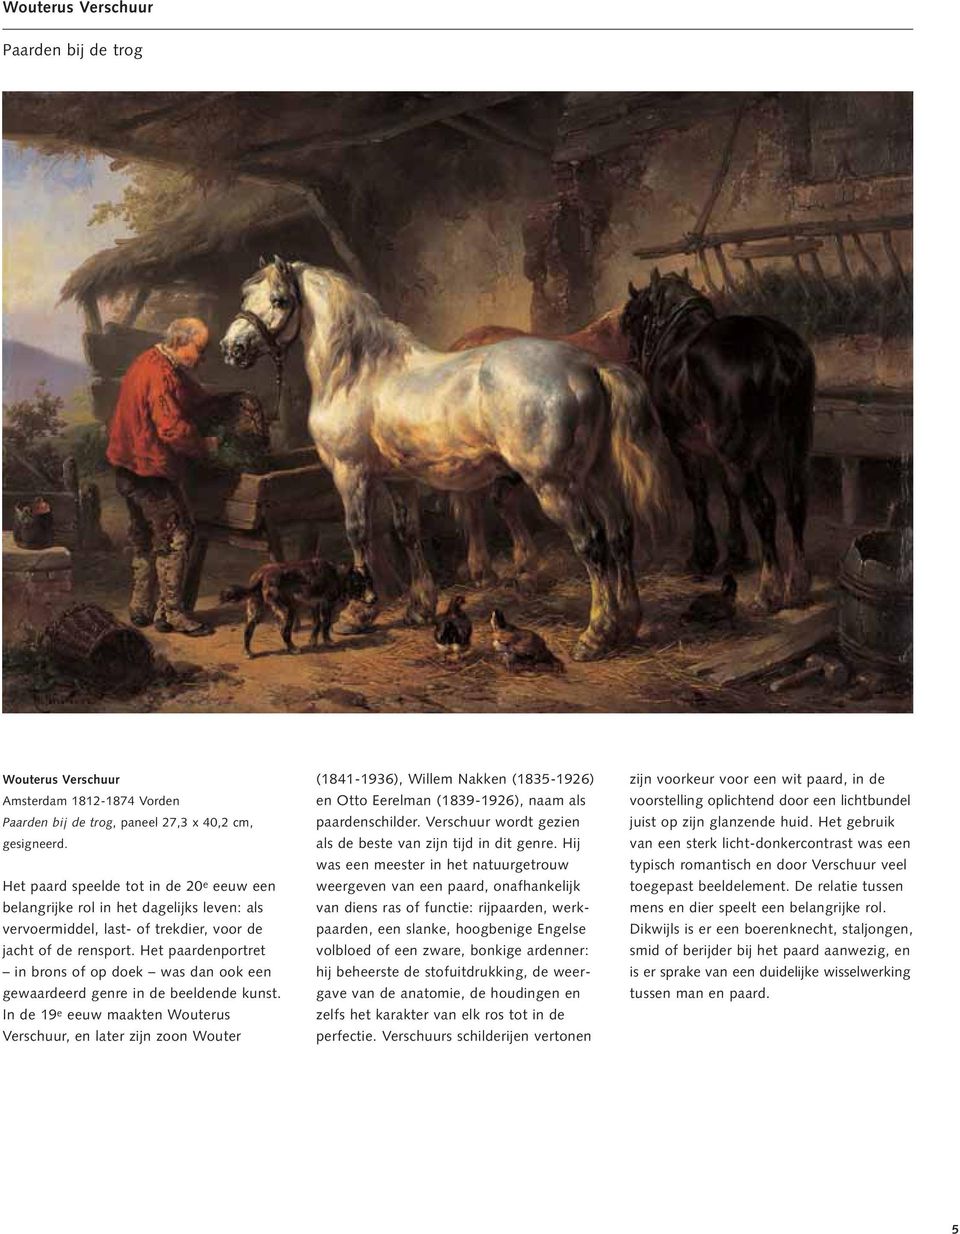 Het paardenportret in brons of op doek was dan ook een gewaardeerd genre in de beeldende kunst.